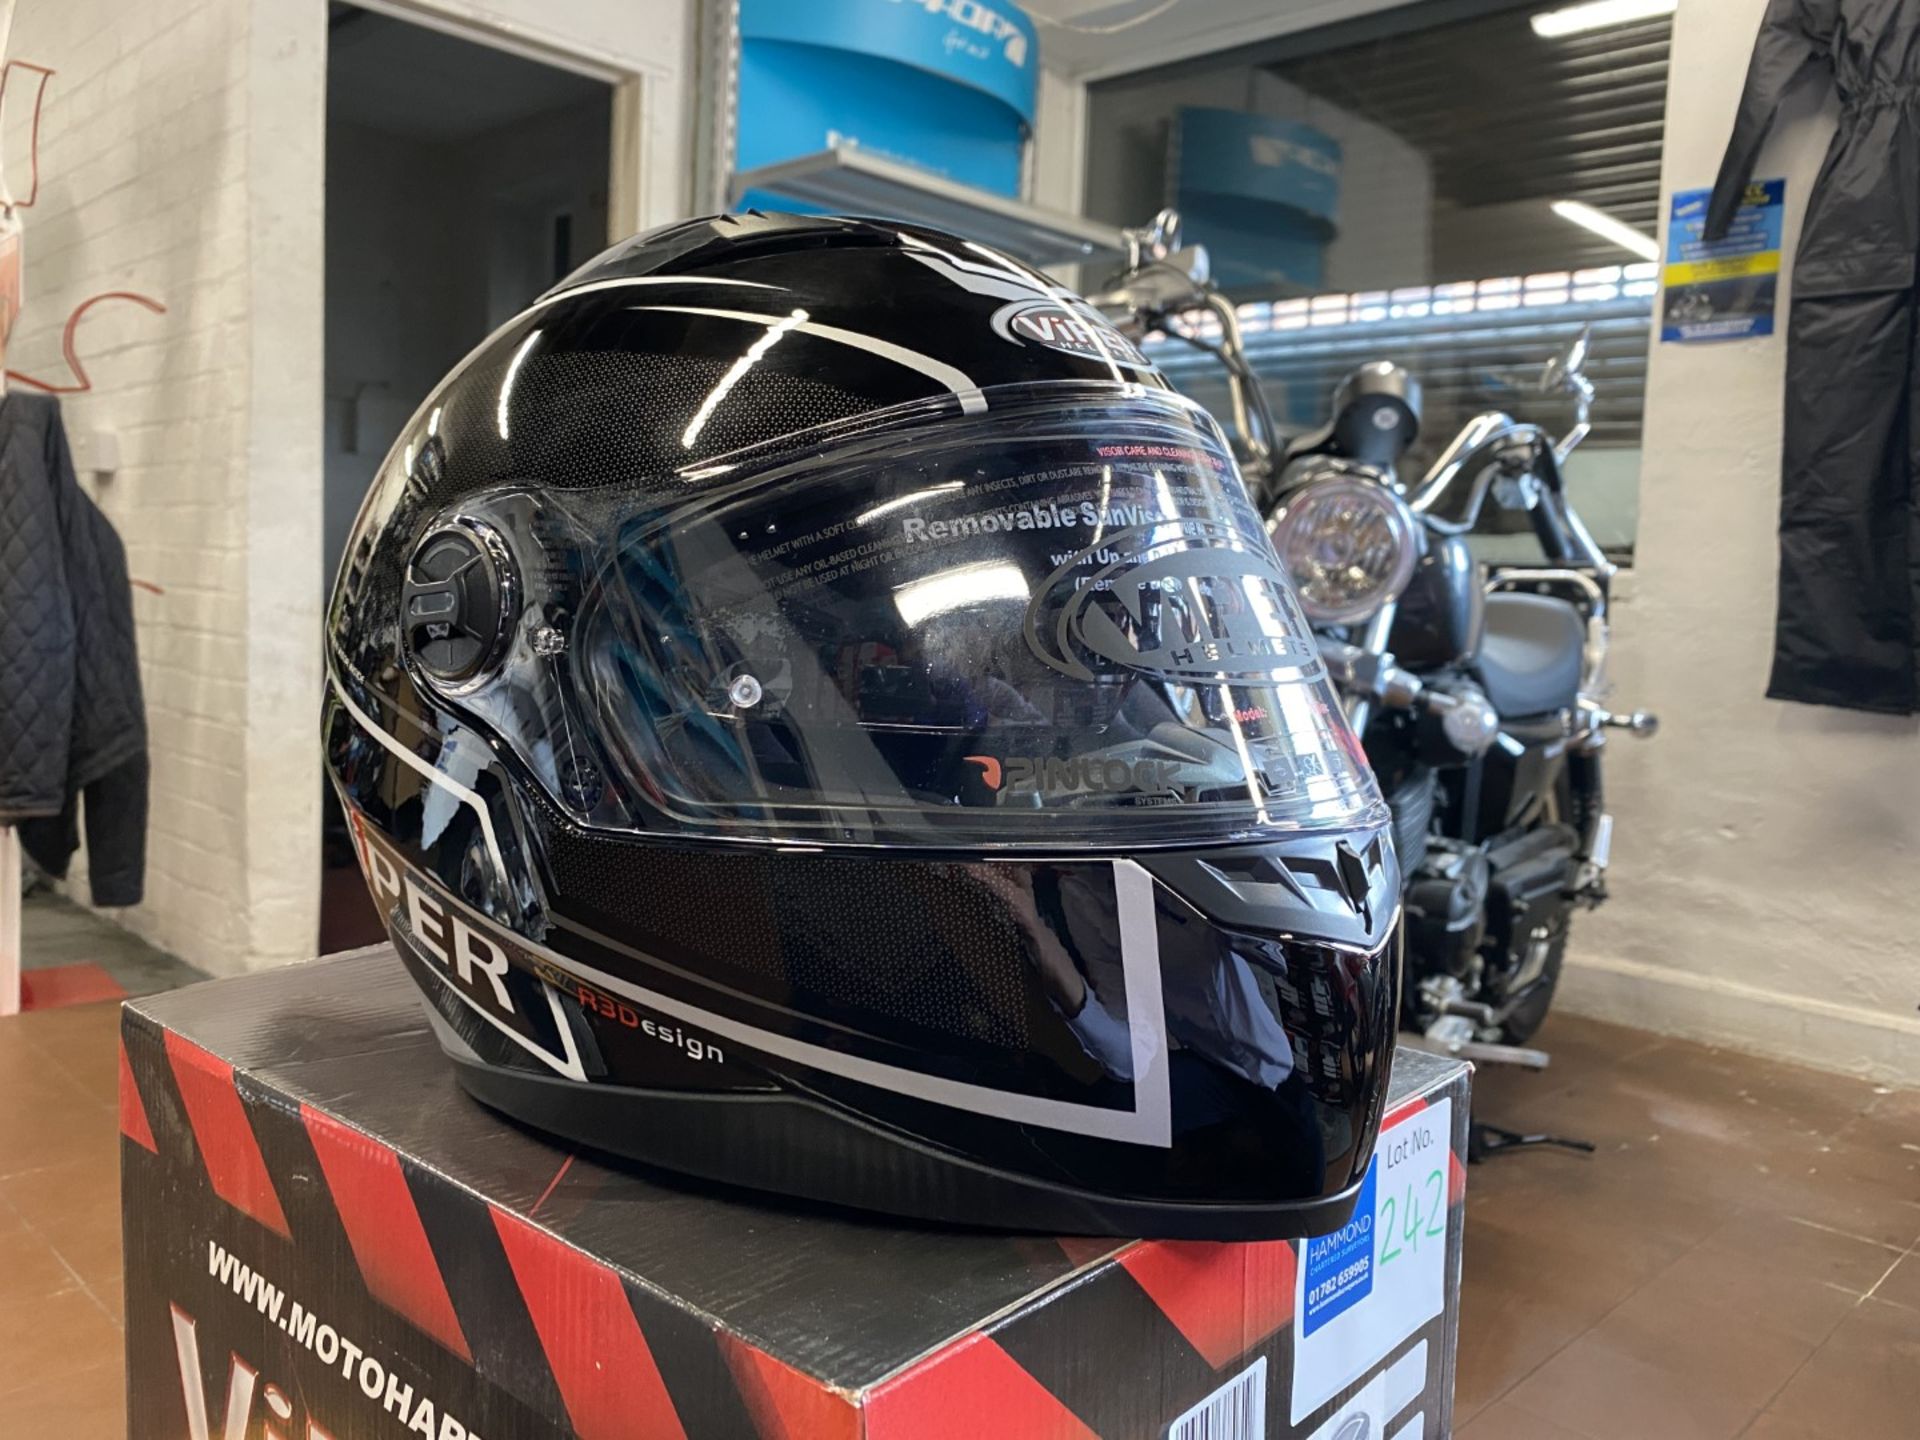 Viper RSV77 Black X-Large - Viper Helmets - Motorcycle / Motorbike Helmet - RRP £69.99 - Image 3 of 5